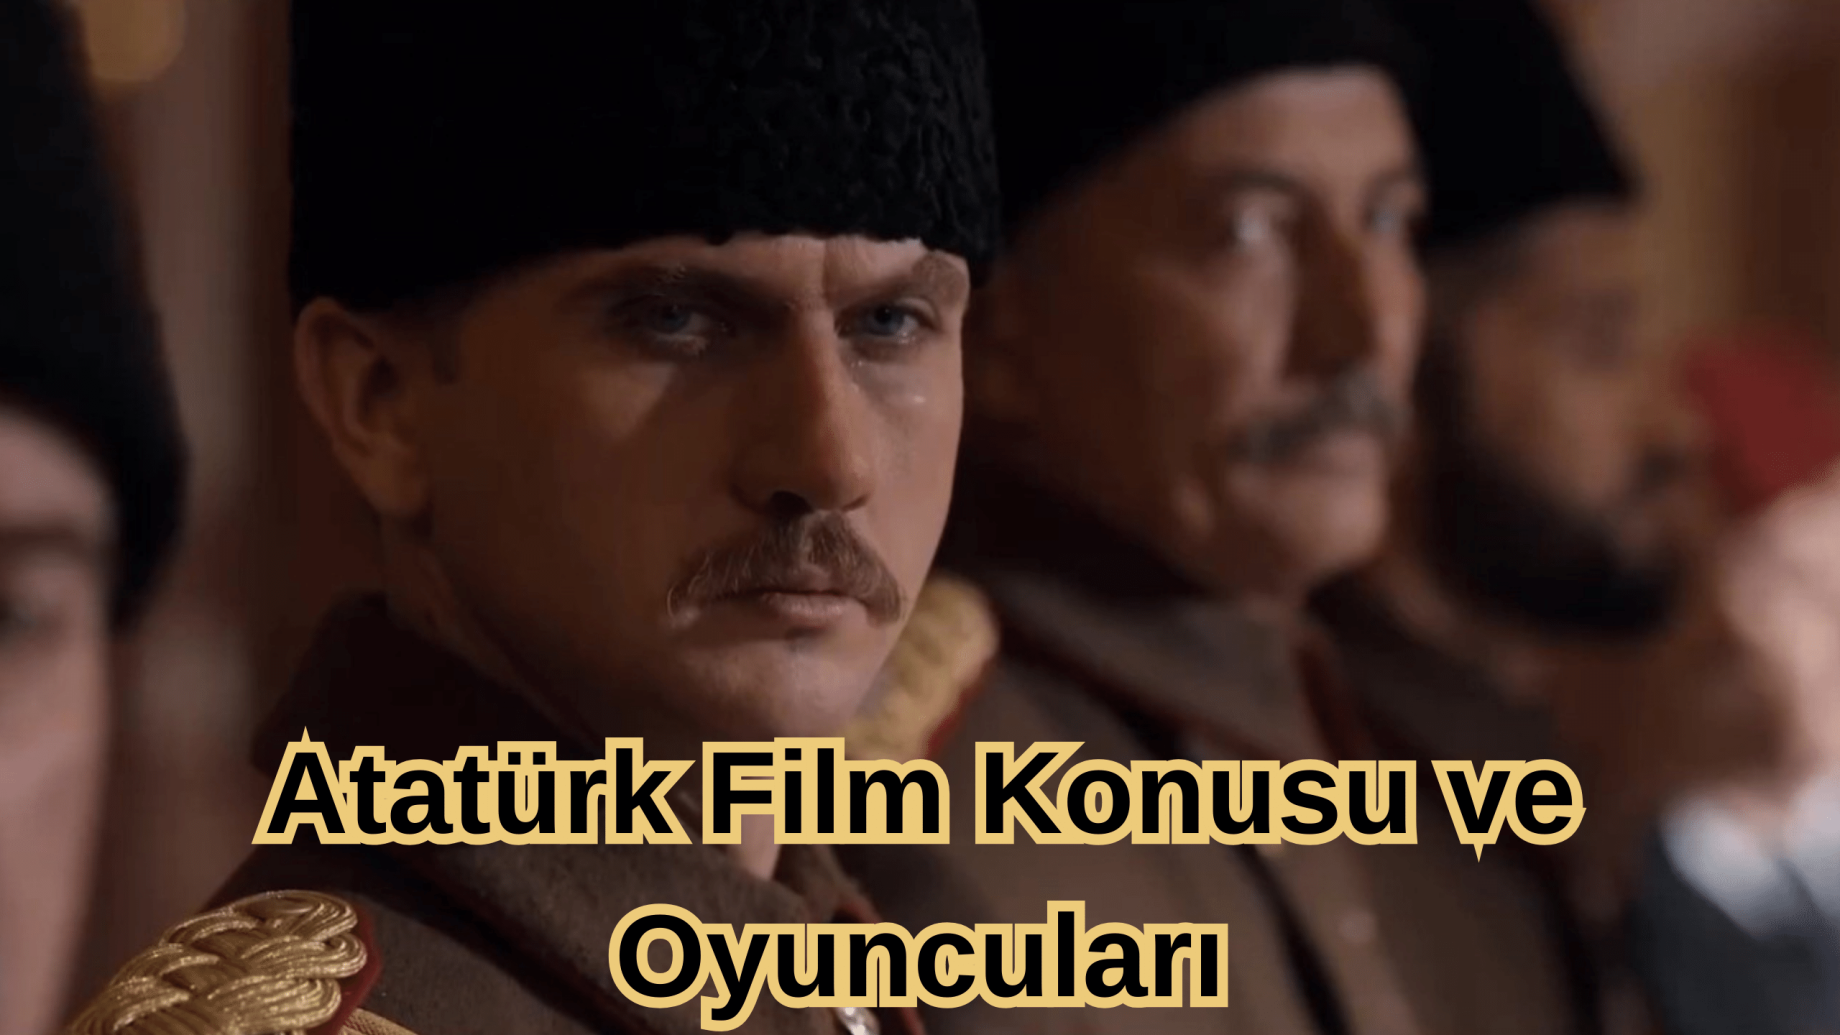 Atatürk Film Konusu ve Oyuncuları